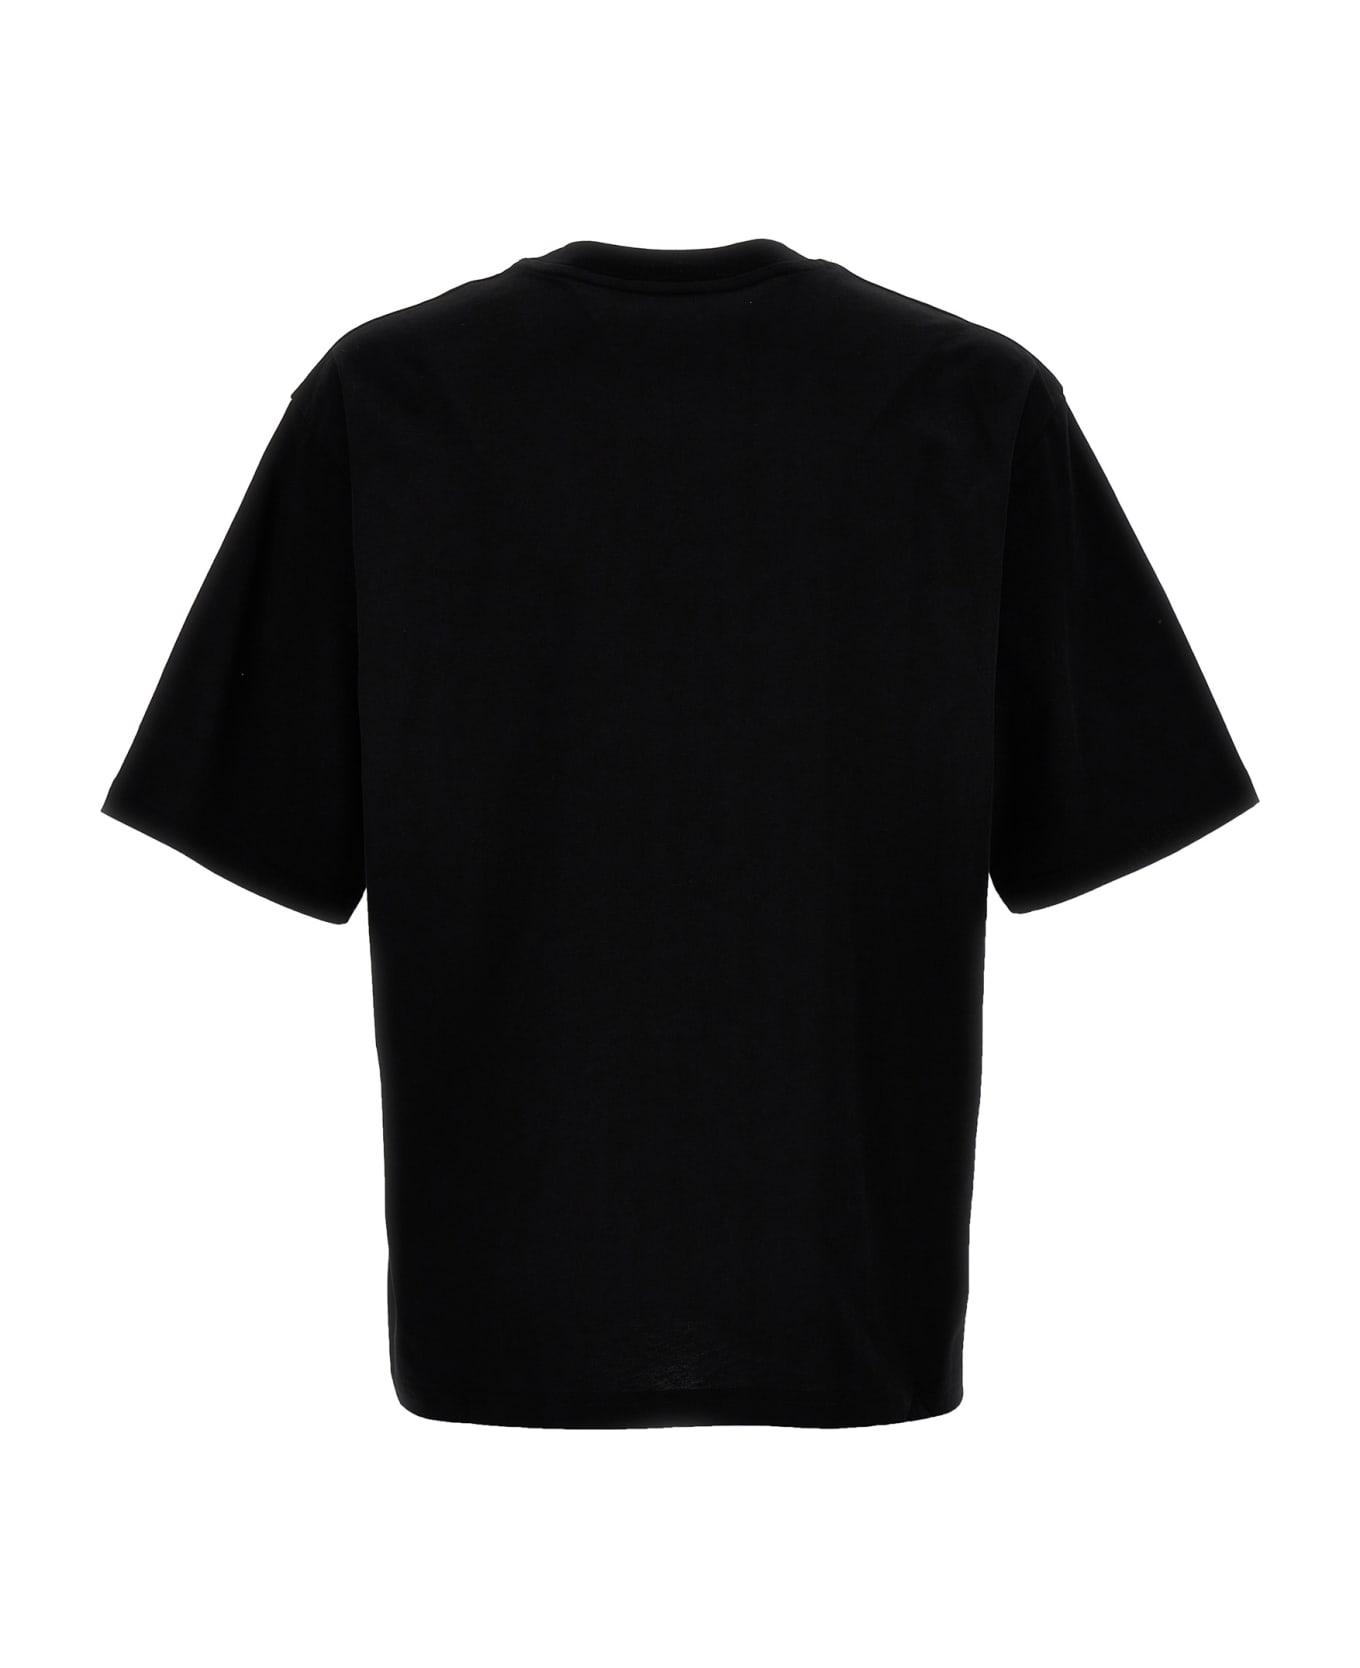 Moschino 'archive Teddy' T-shirt - Nero